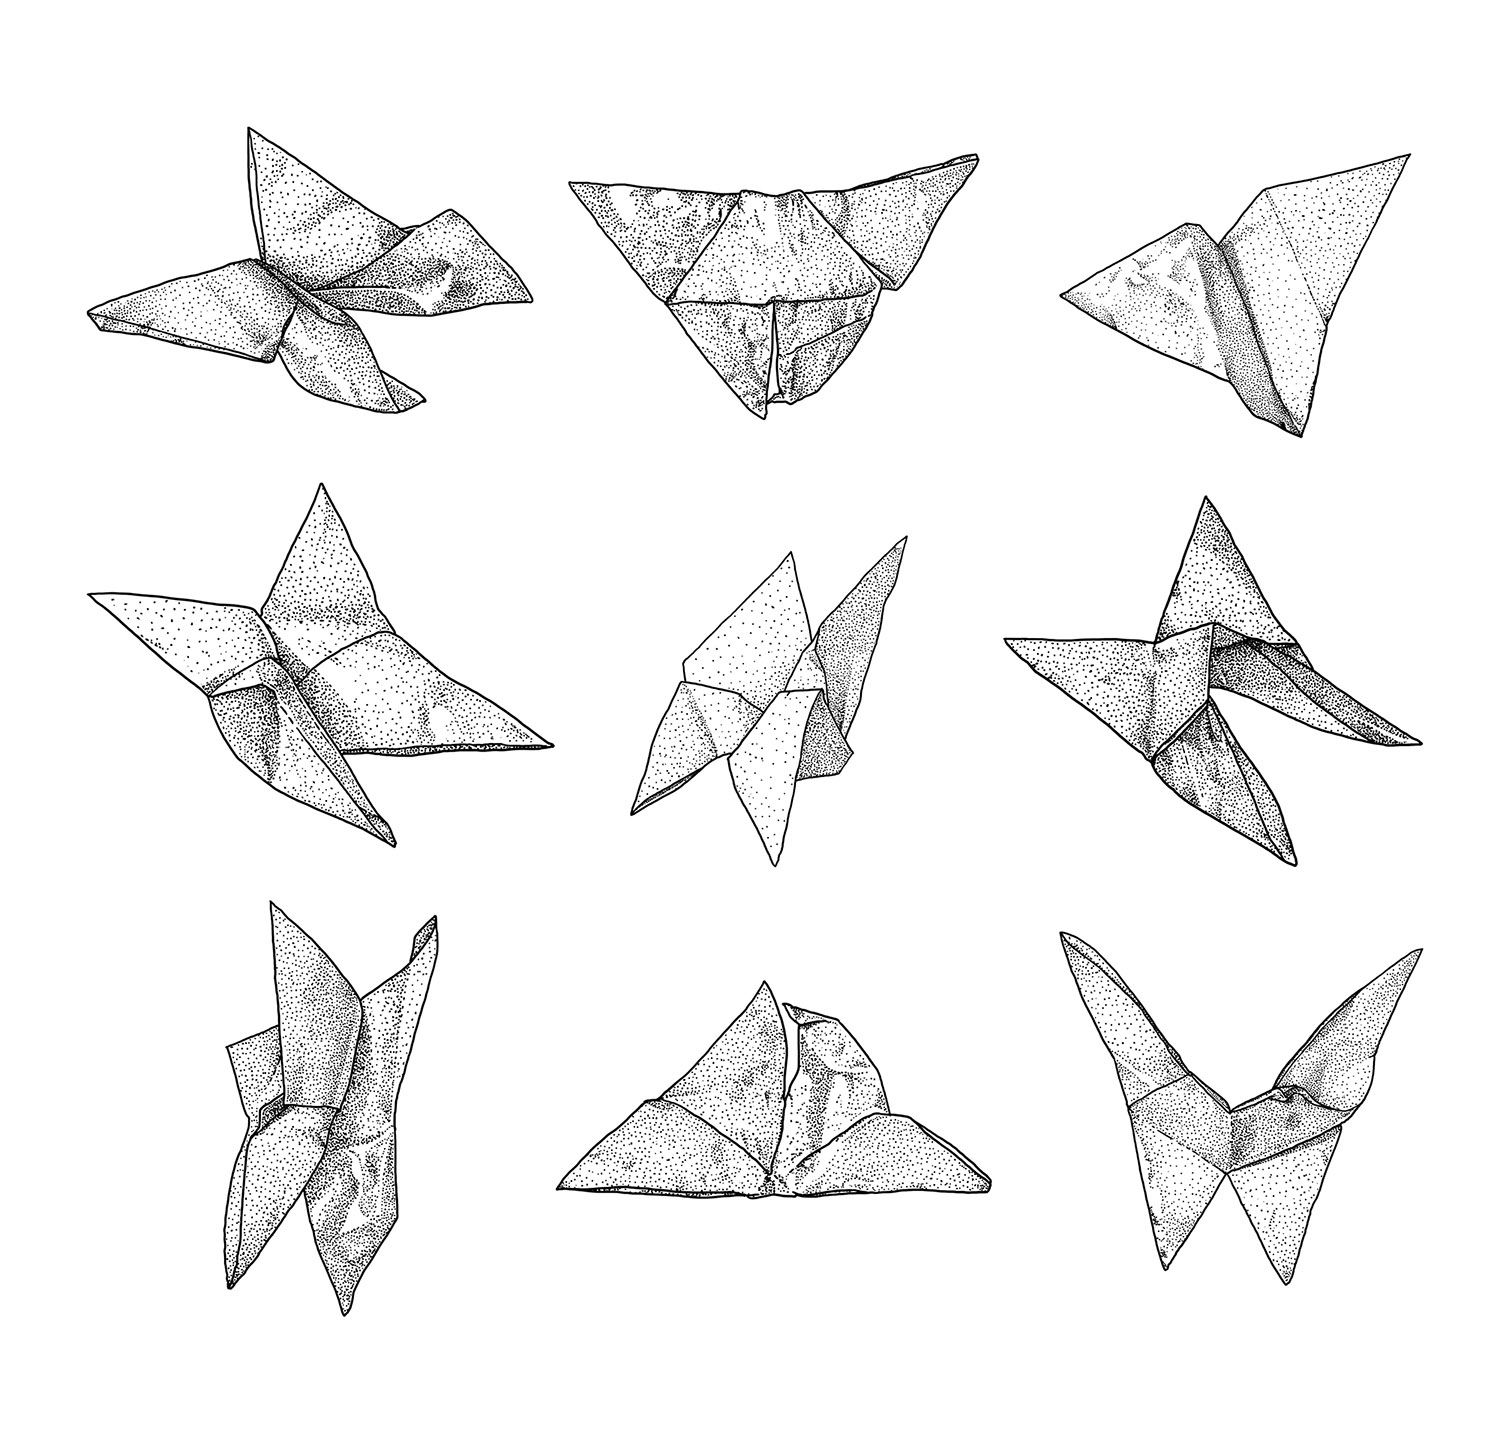 onvolut „Origami“, 1-farbige Serigraphie auf Karton (handgedruckt), erste Auflage, 10 Stück, 2014, 50×50